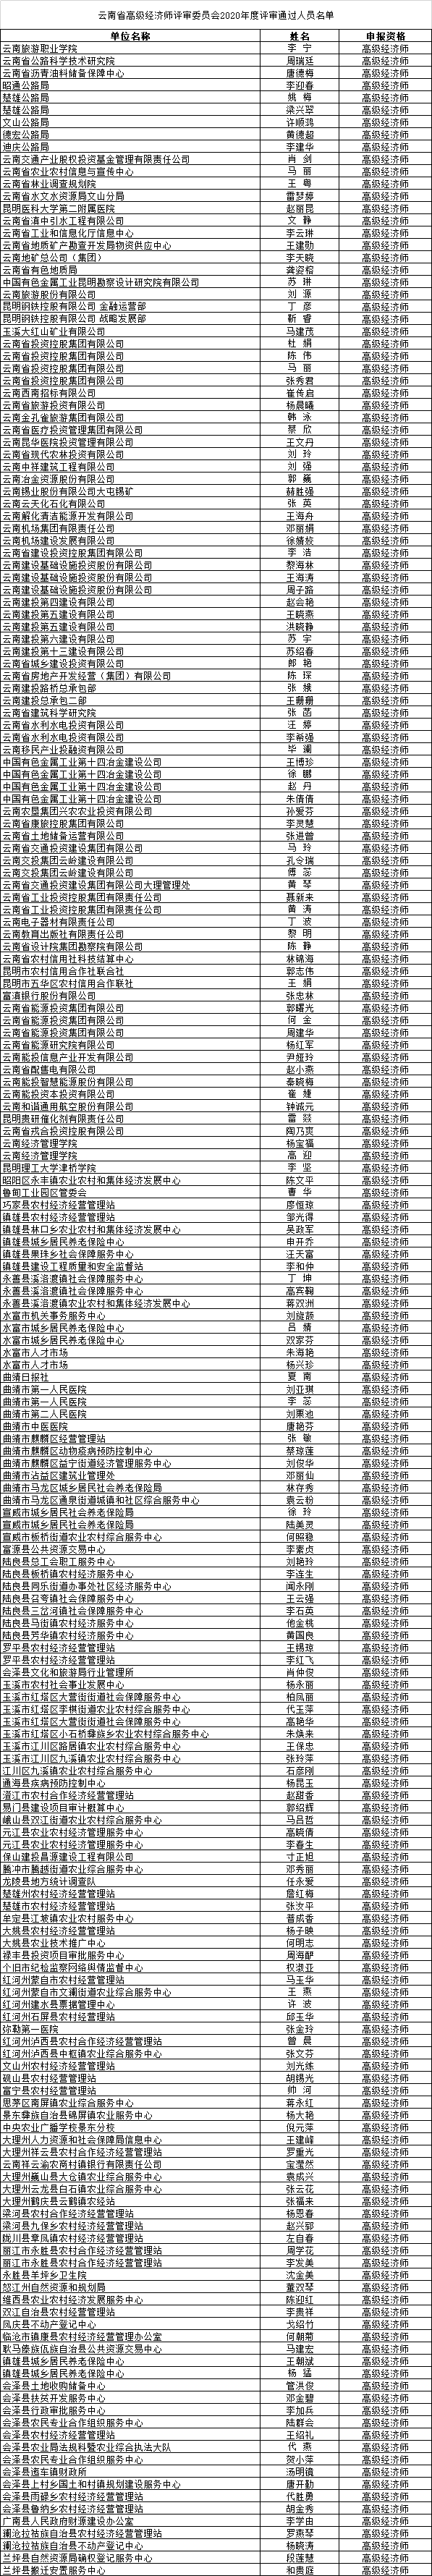 关注云南省高级经济师评审委员会2020年度评审结果正在公示